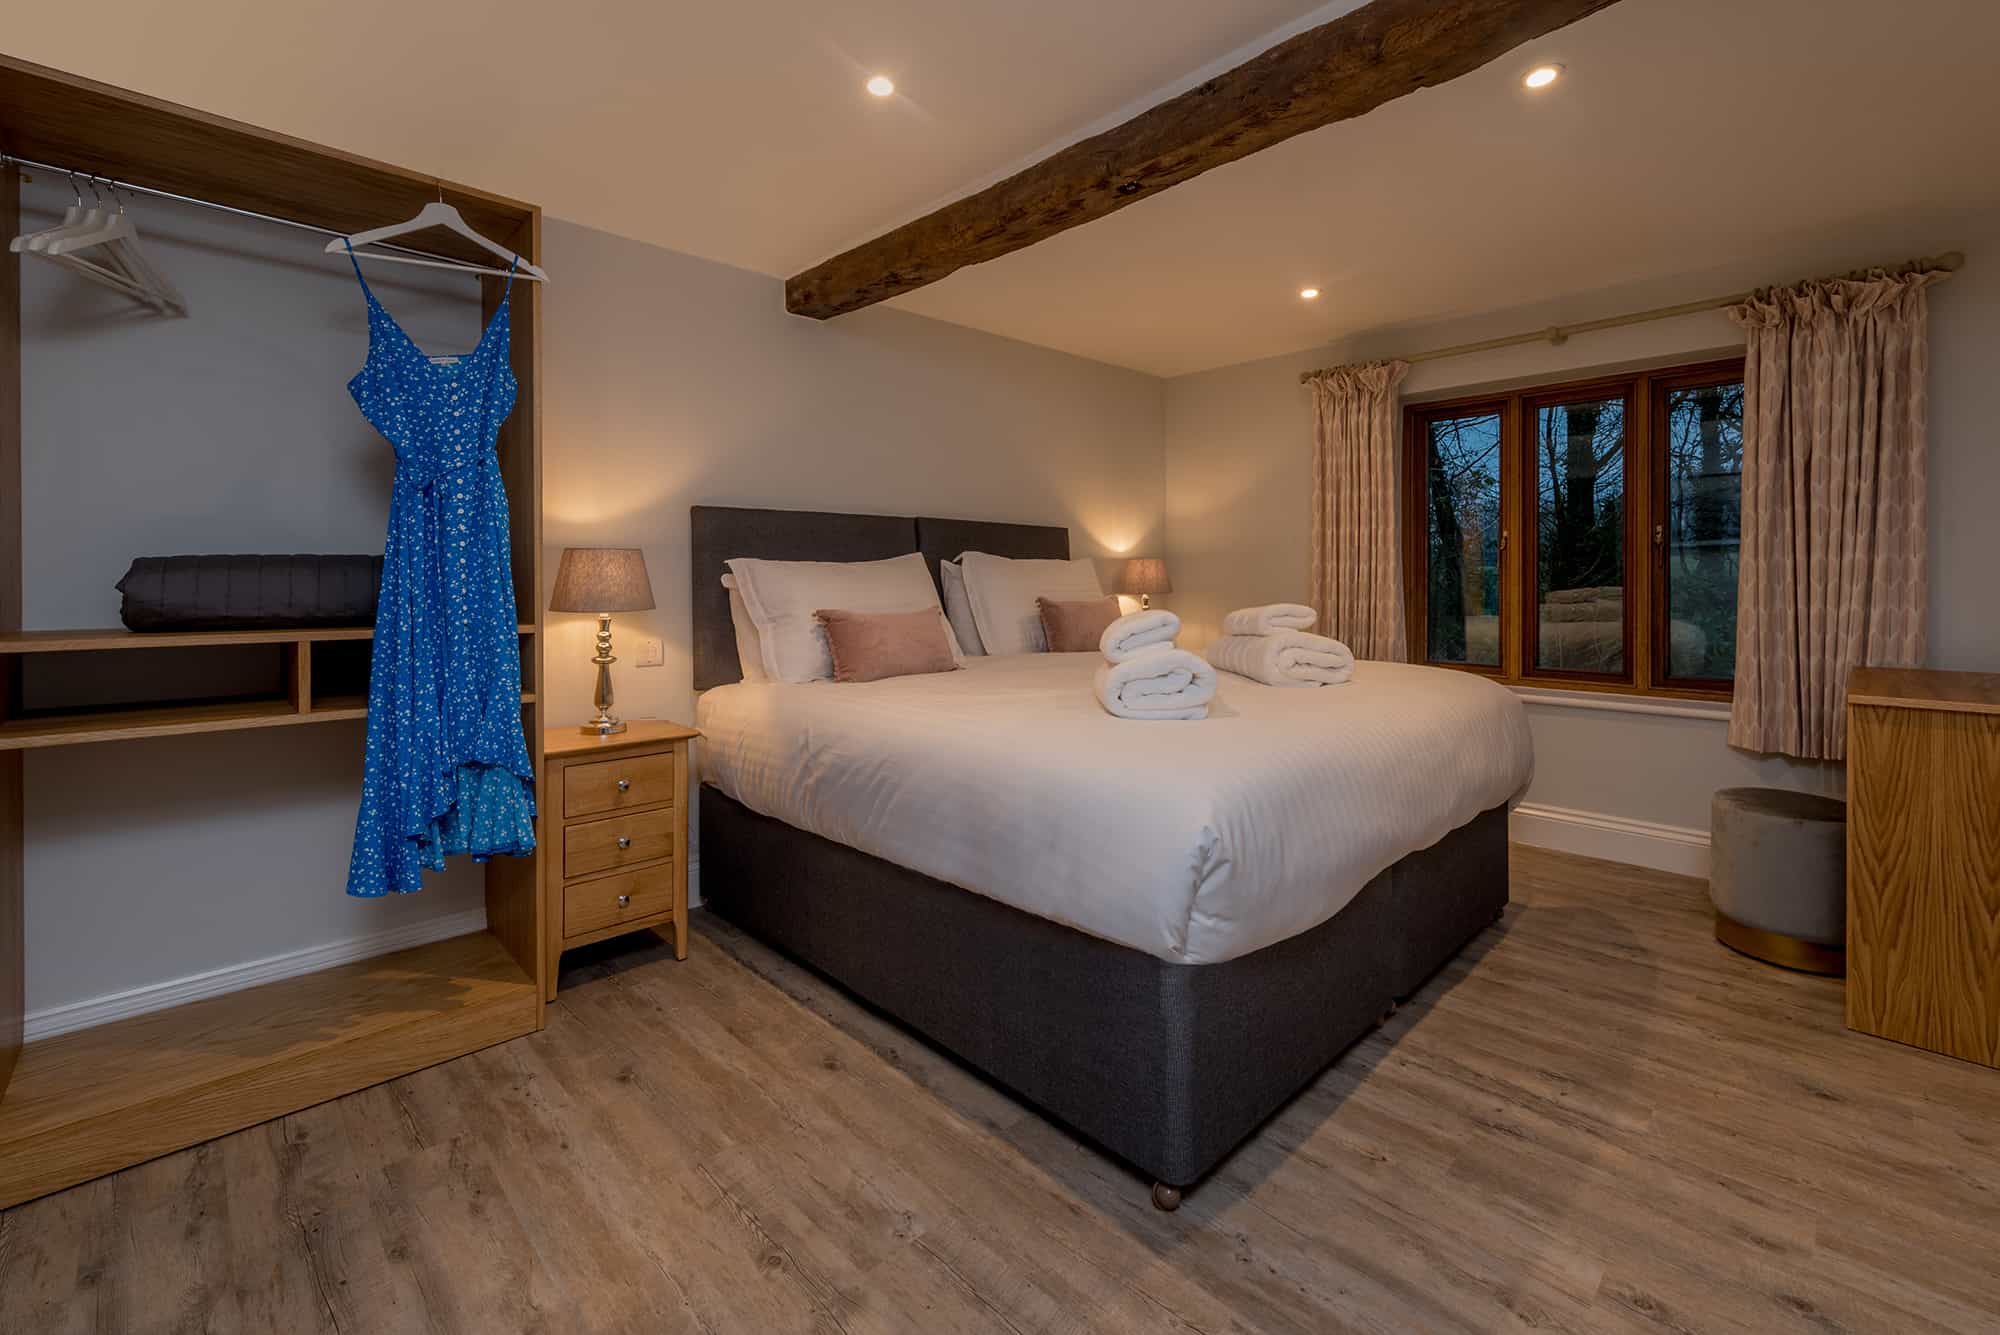 Bedroom at Kingshay Barton